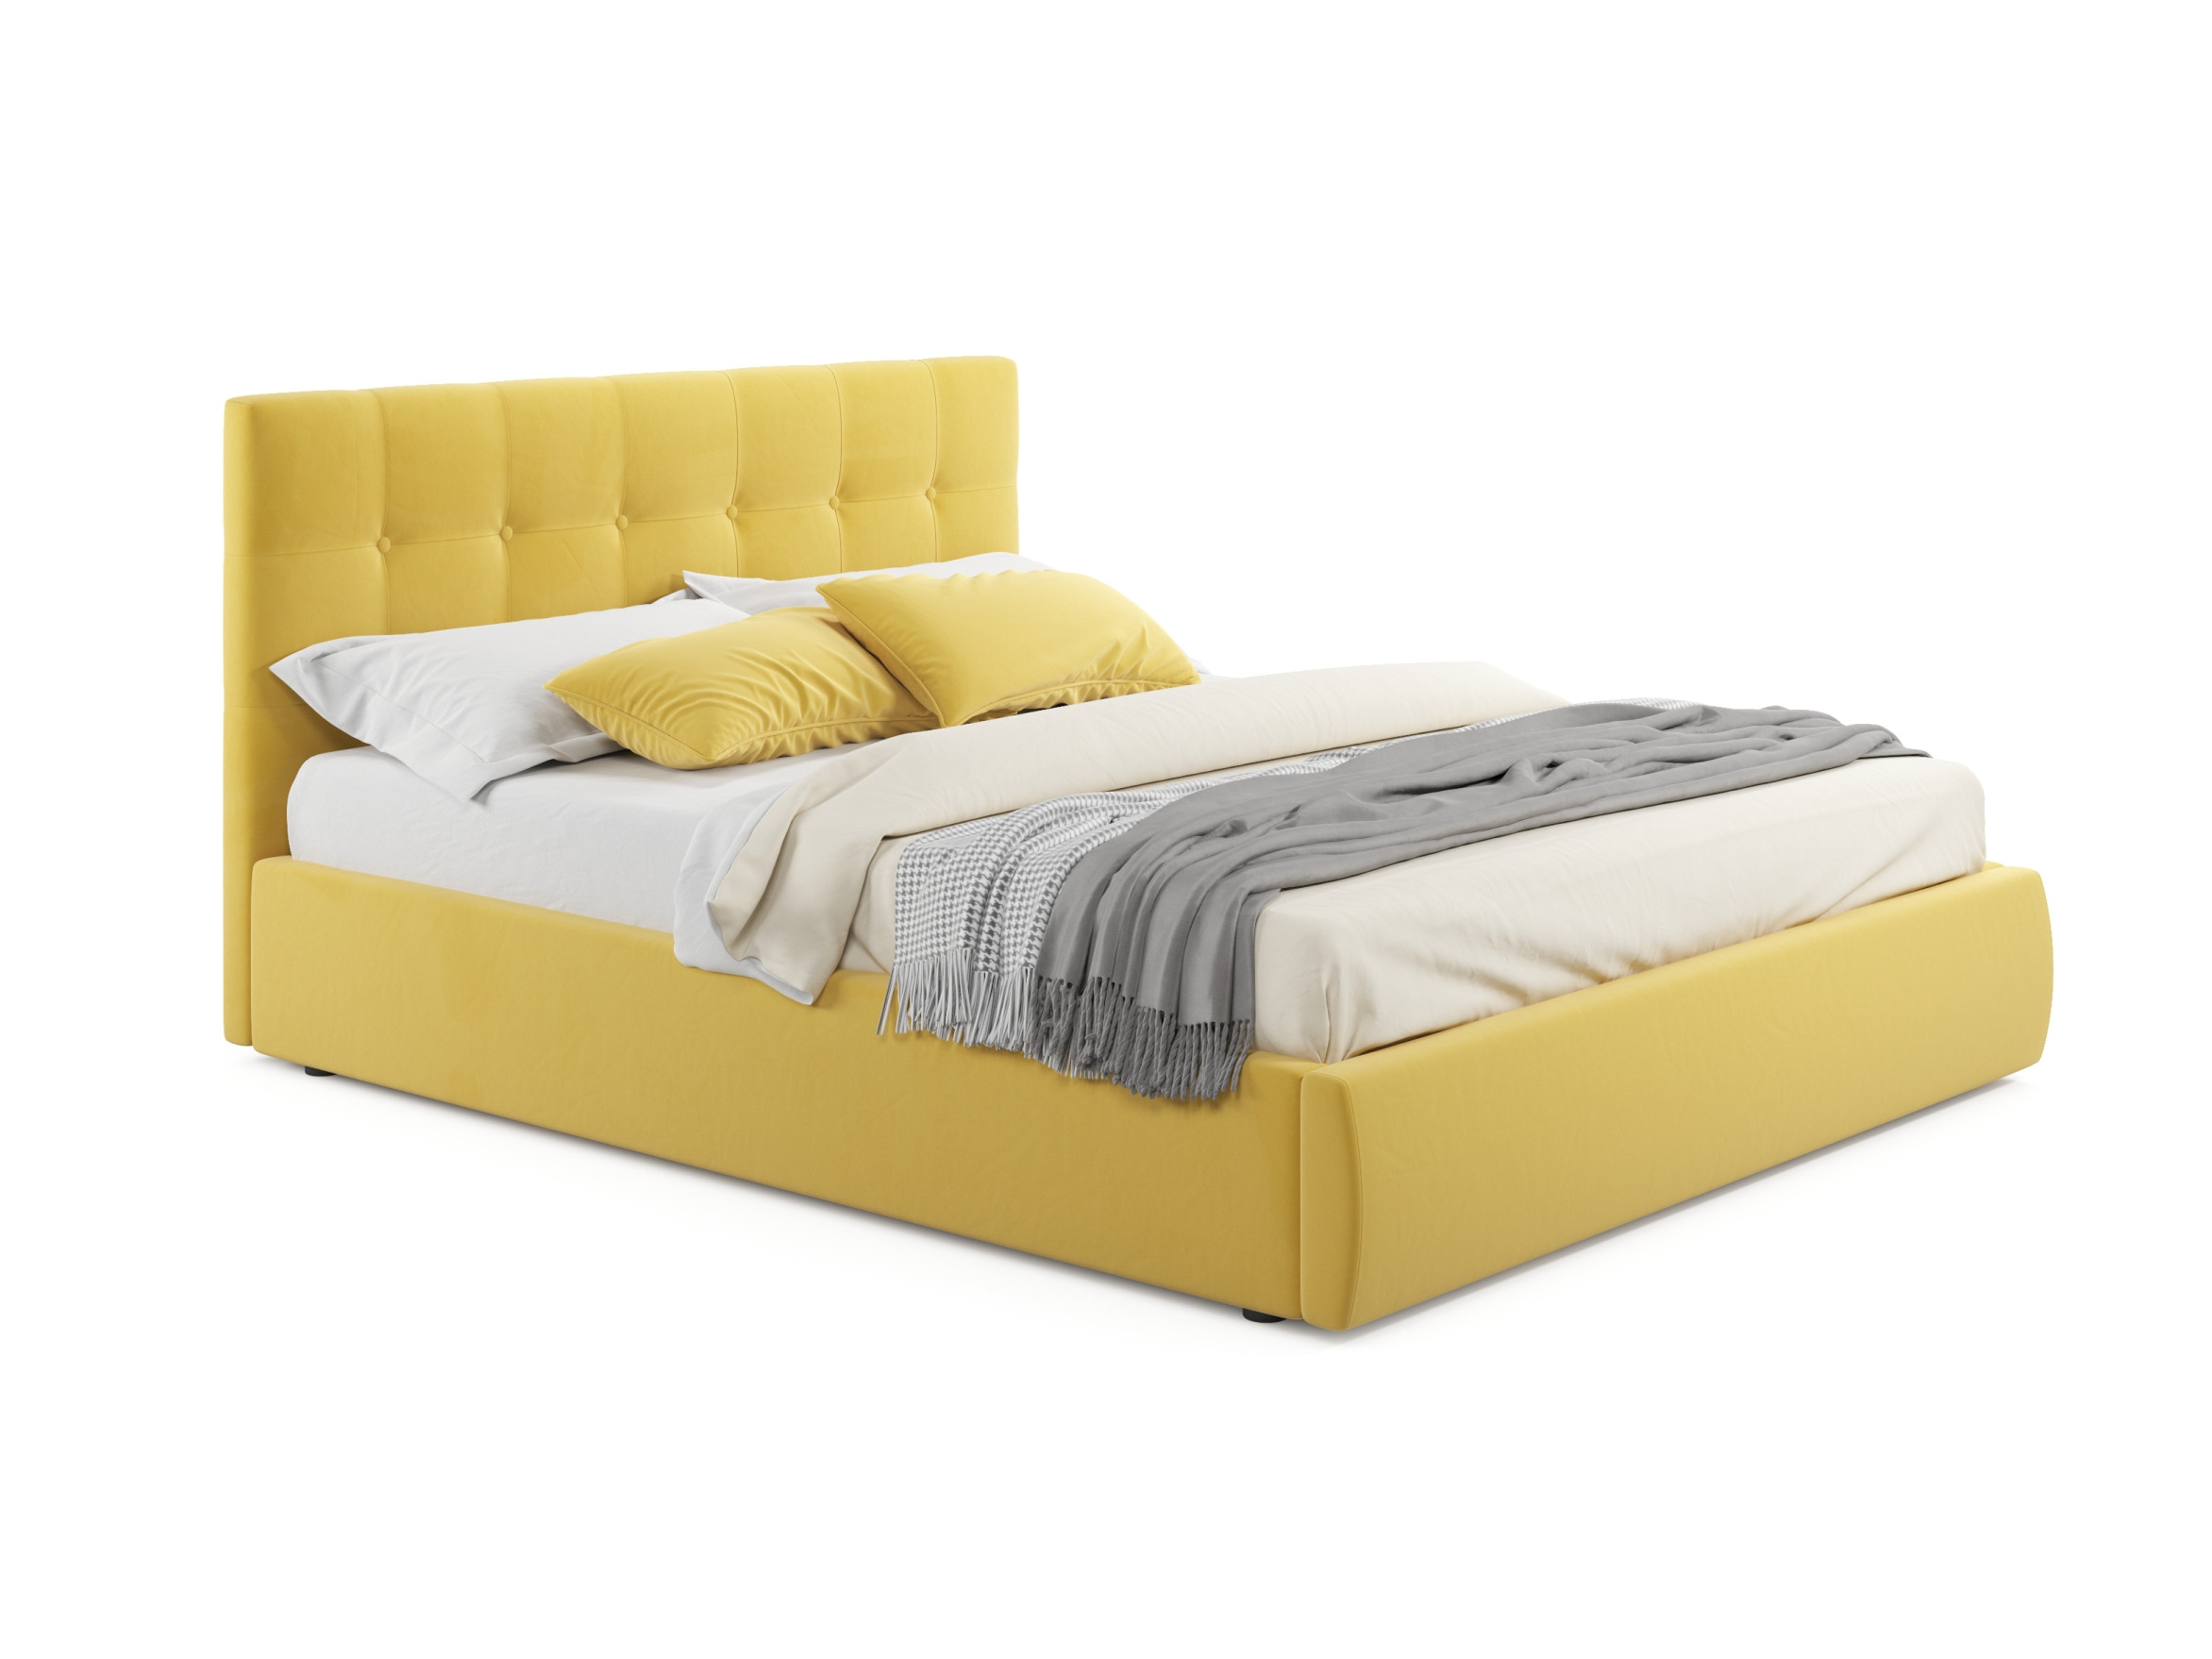 Мягкая кровать Selesta 1600 желтая с матрасом АСТРА с подъем мягкая кровать selesta 1400 желтая с матрасом гост с подъемным механизмом желтый желтый велюр дсп